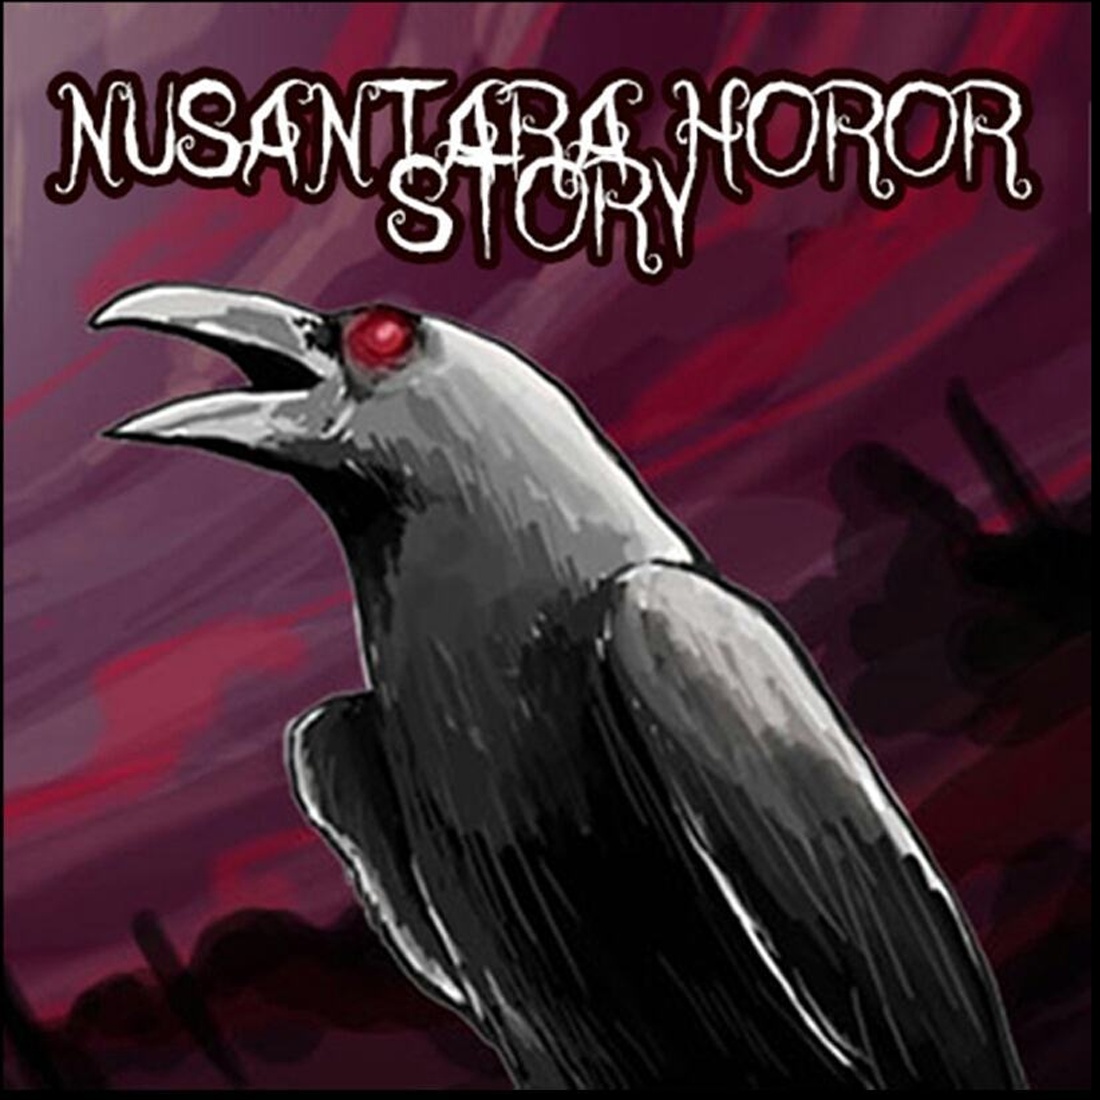 Cerita Hantu Nusantara